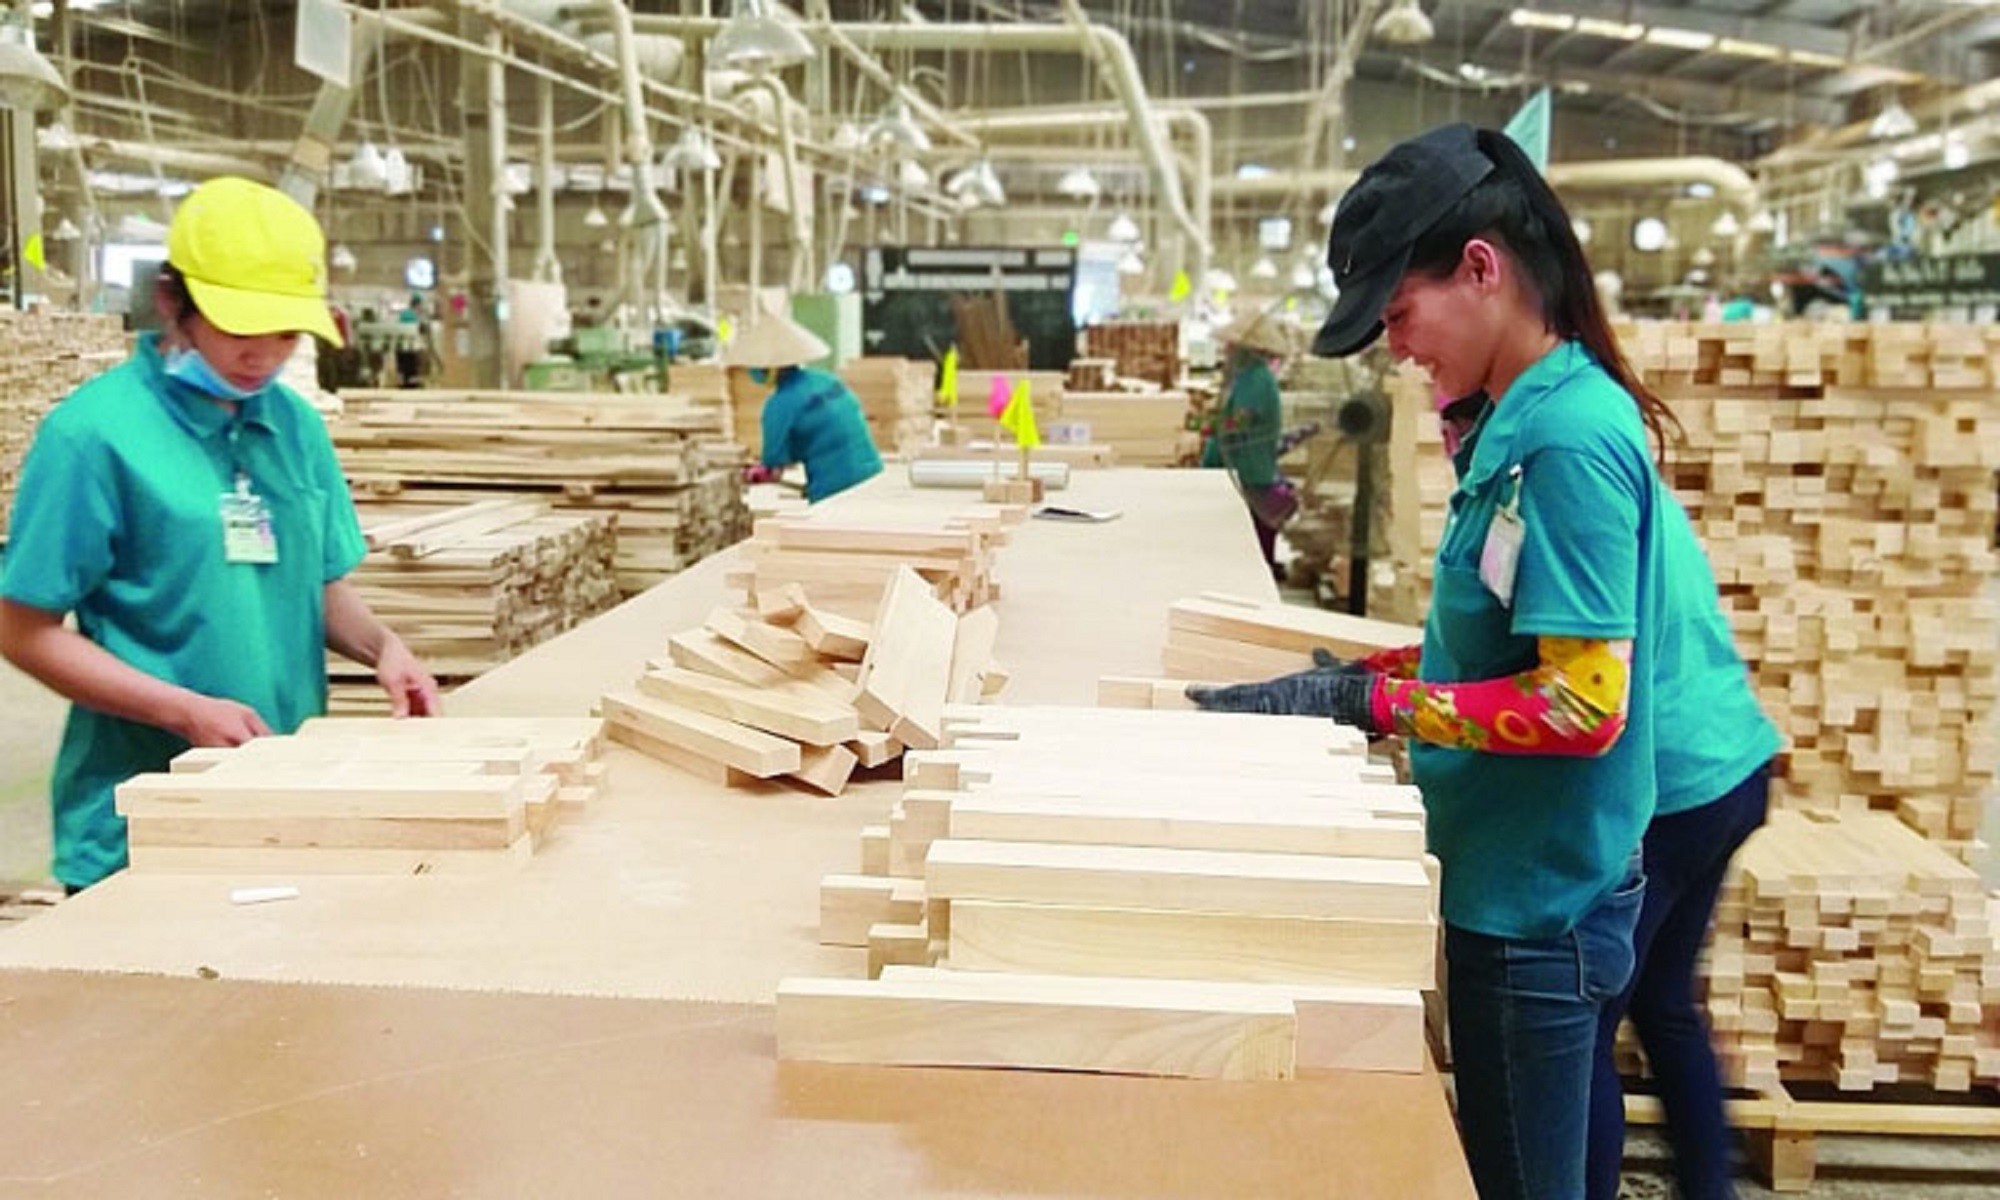 
Xuất khẩu gỗ và sản phẩm gỗ của Việt Nam trong tháng 6 đạt mức 1,5 tỷ USD
